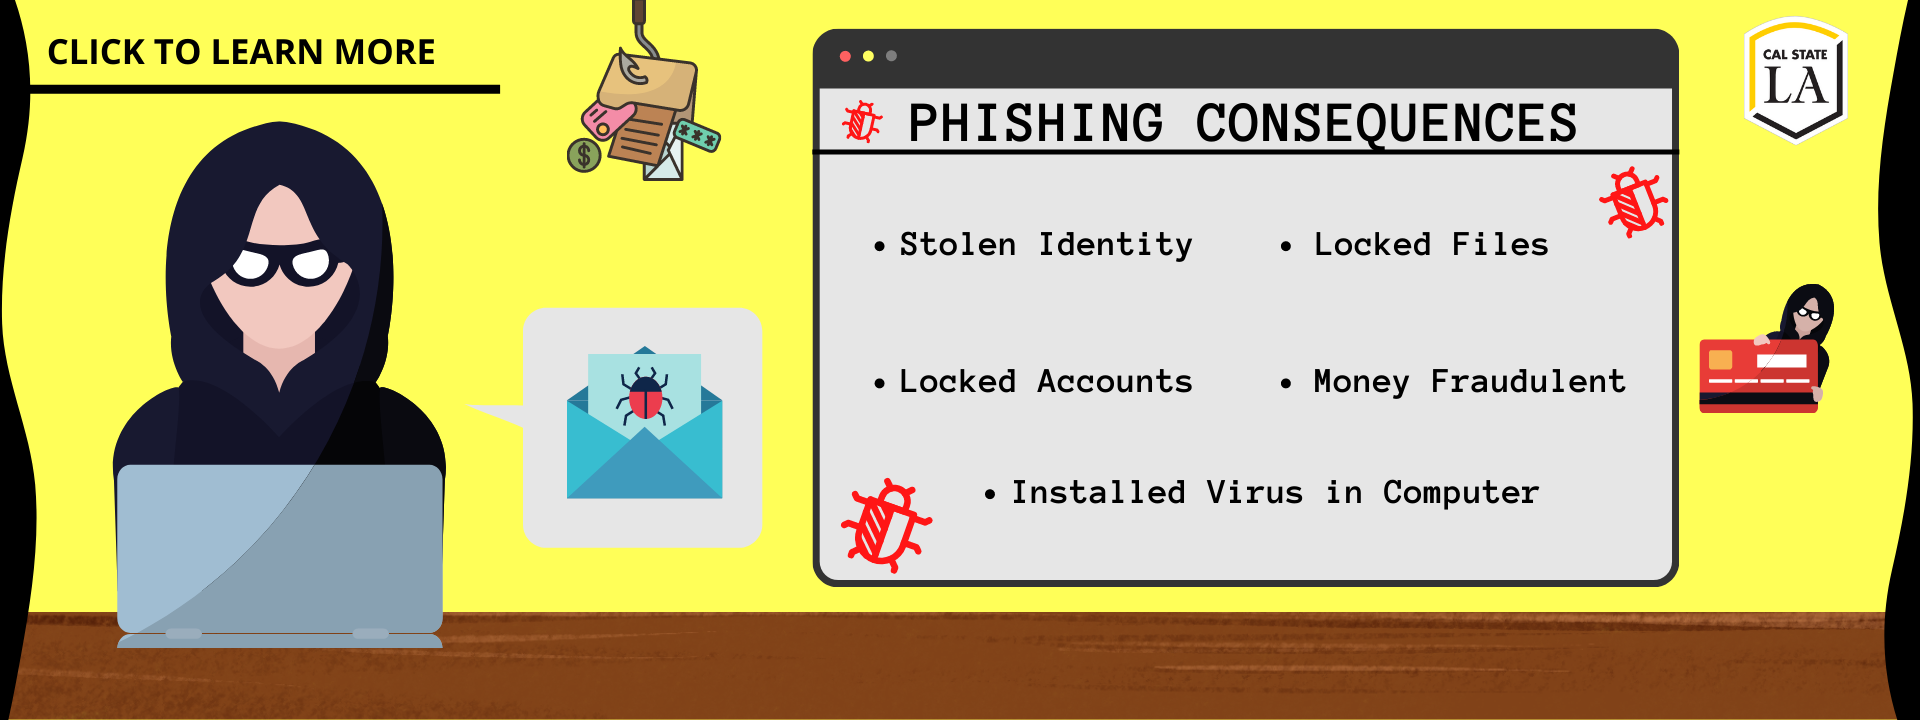 Beware of Phishing Emails